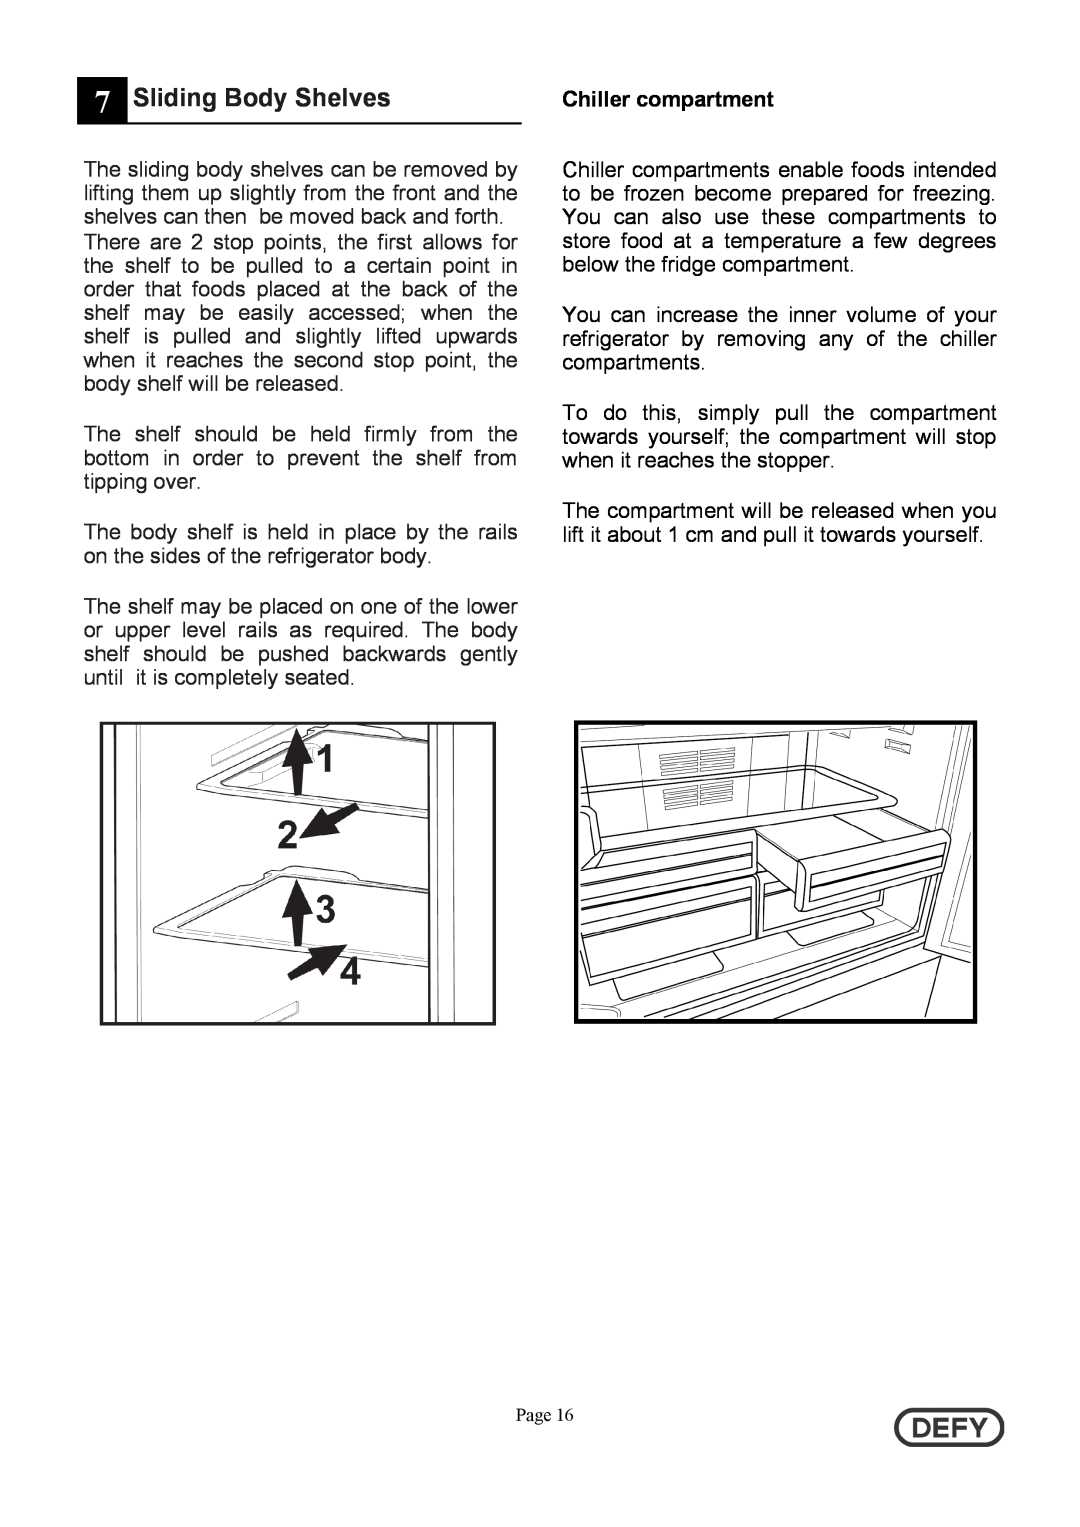 Defy Appliances DFC402 instruction manual Sliding Body Shelves, Chiller compartment 